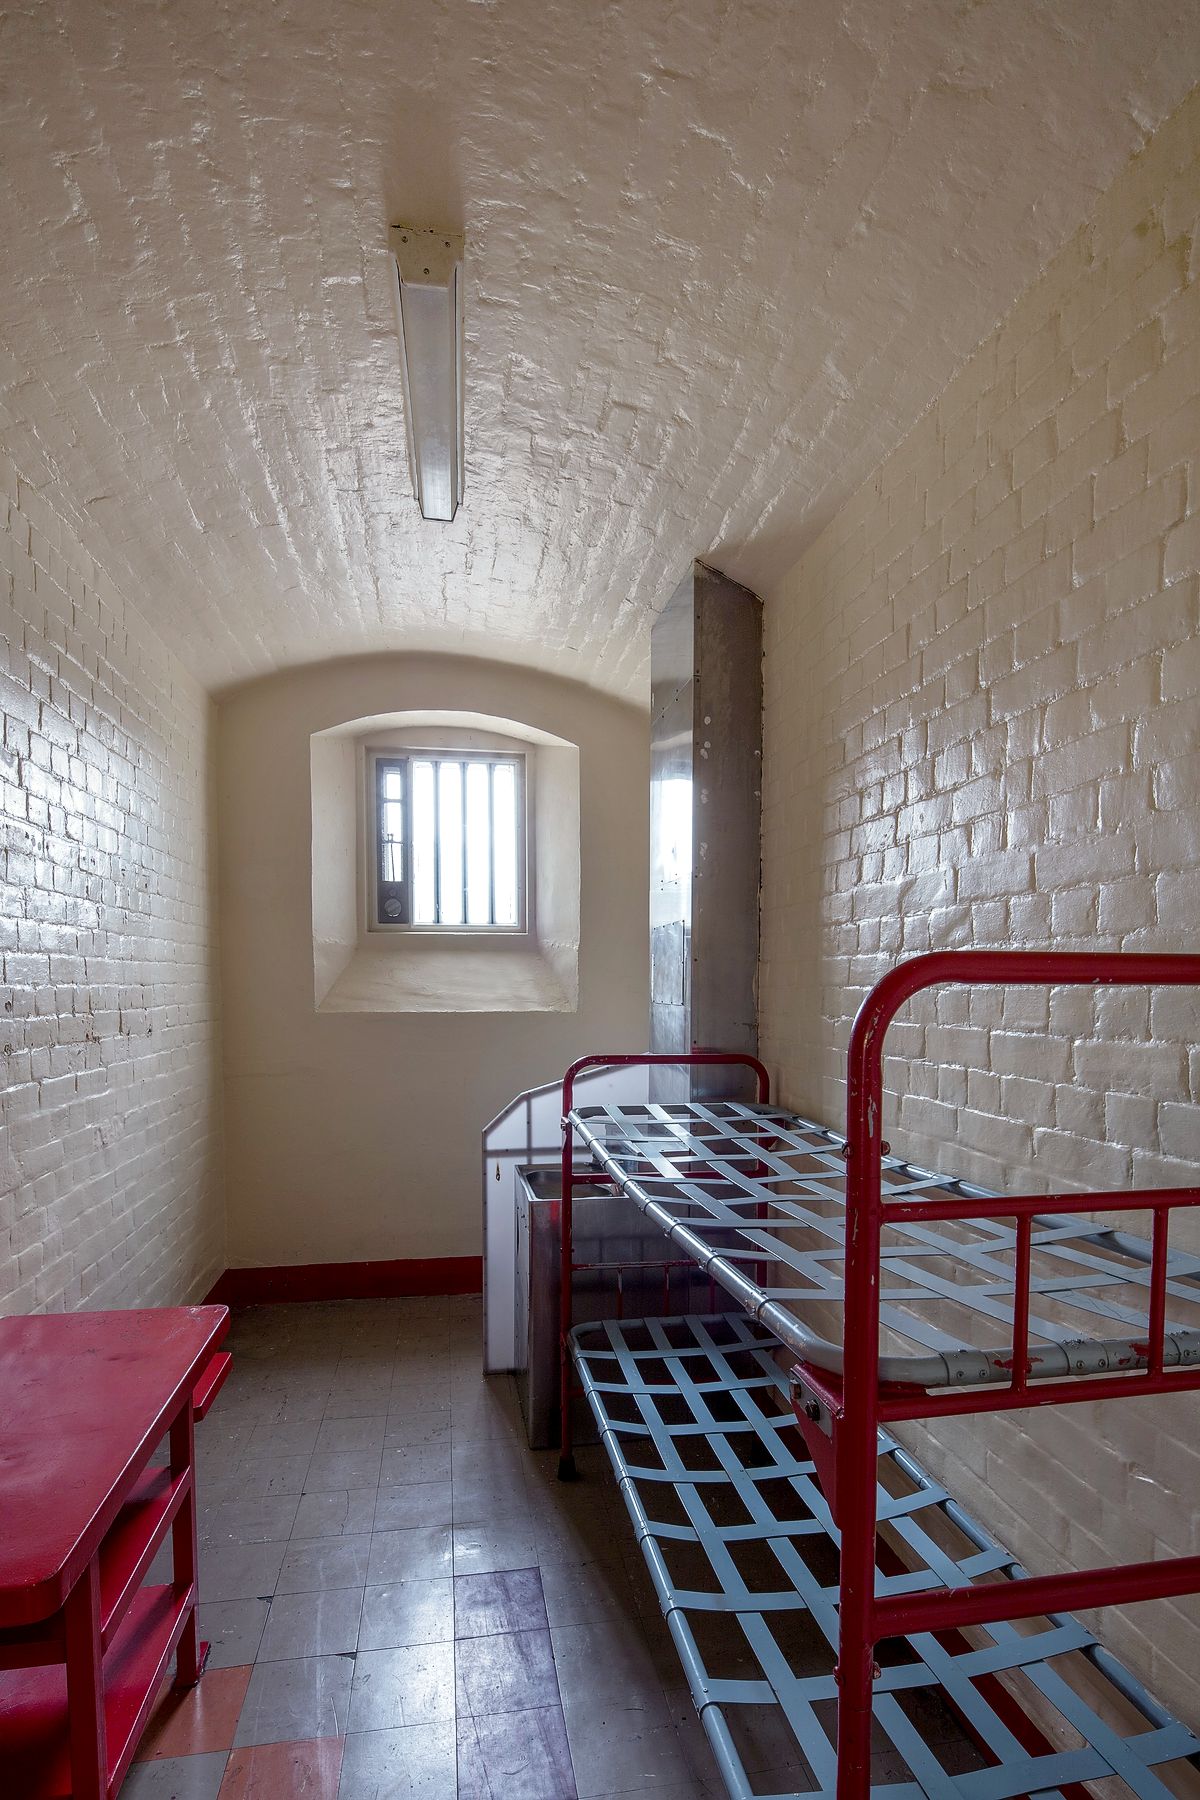 Уайльд провел в этой камере в тюрьме Ридинг два года. Именно здесь он начал писать письмо-исповедь De Profundis